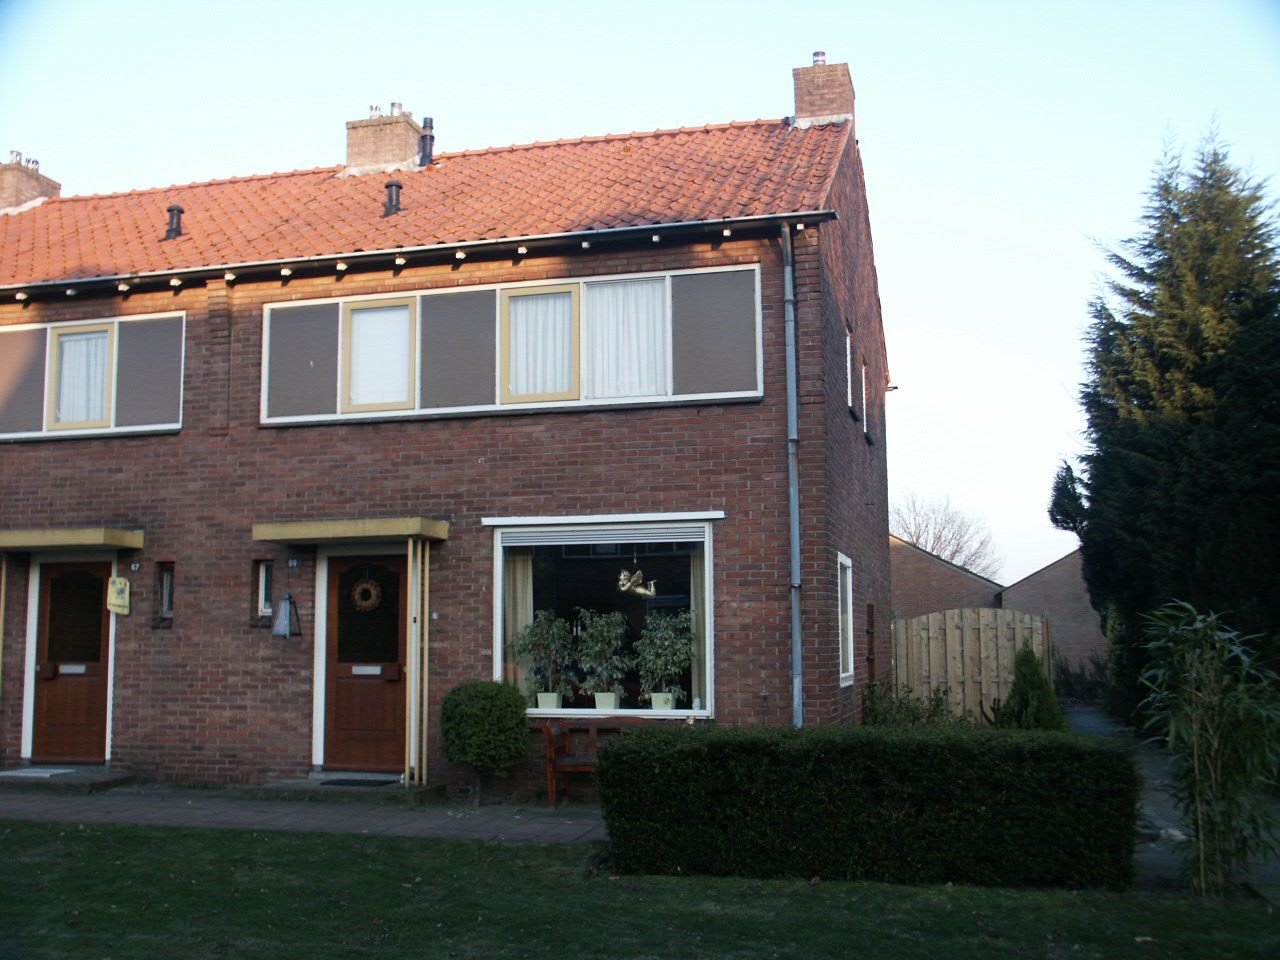 Meidoornstraat 69, 7151 ZV Eibergen, Nederland